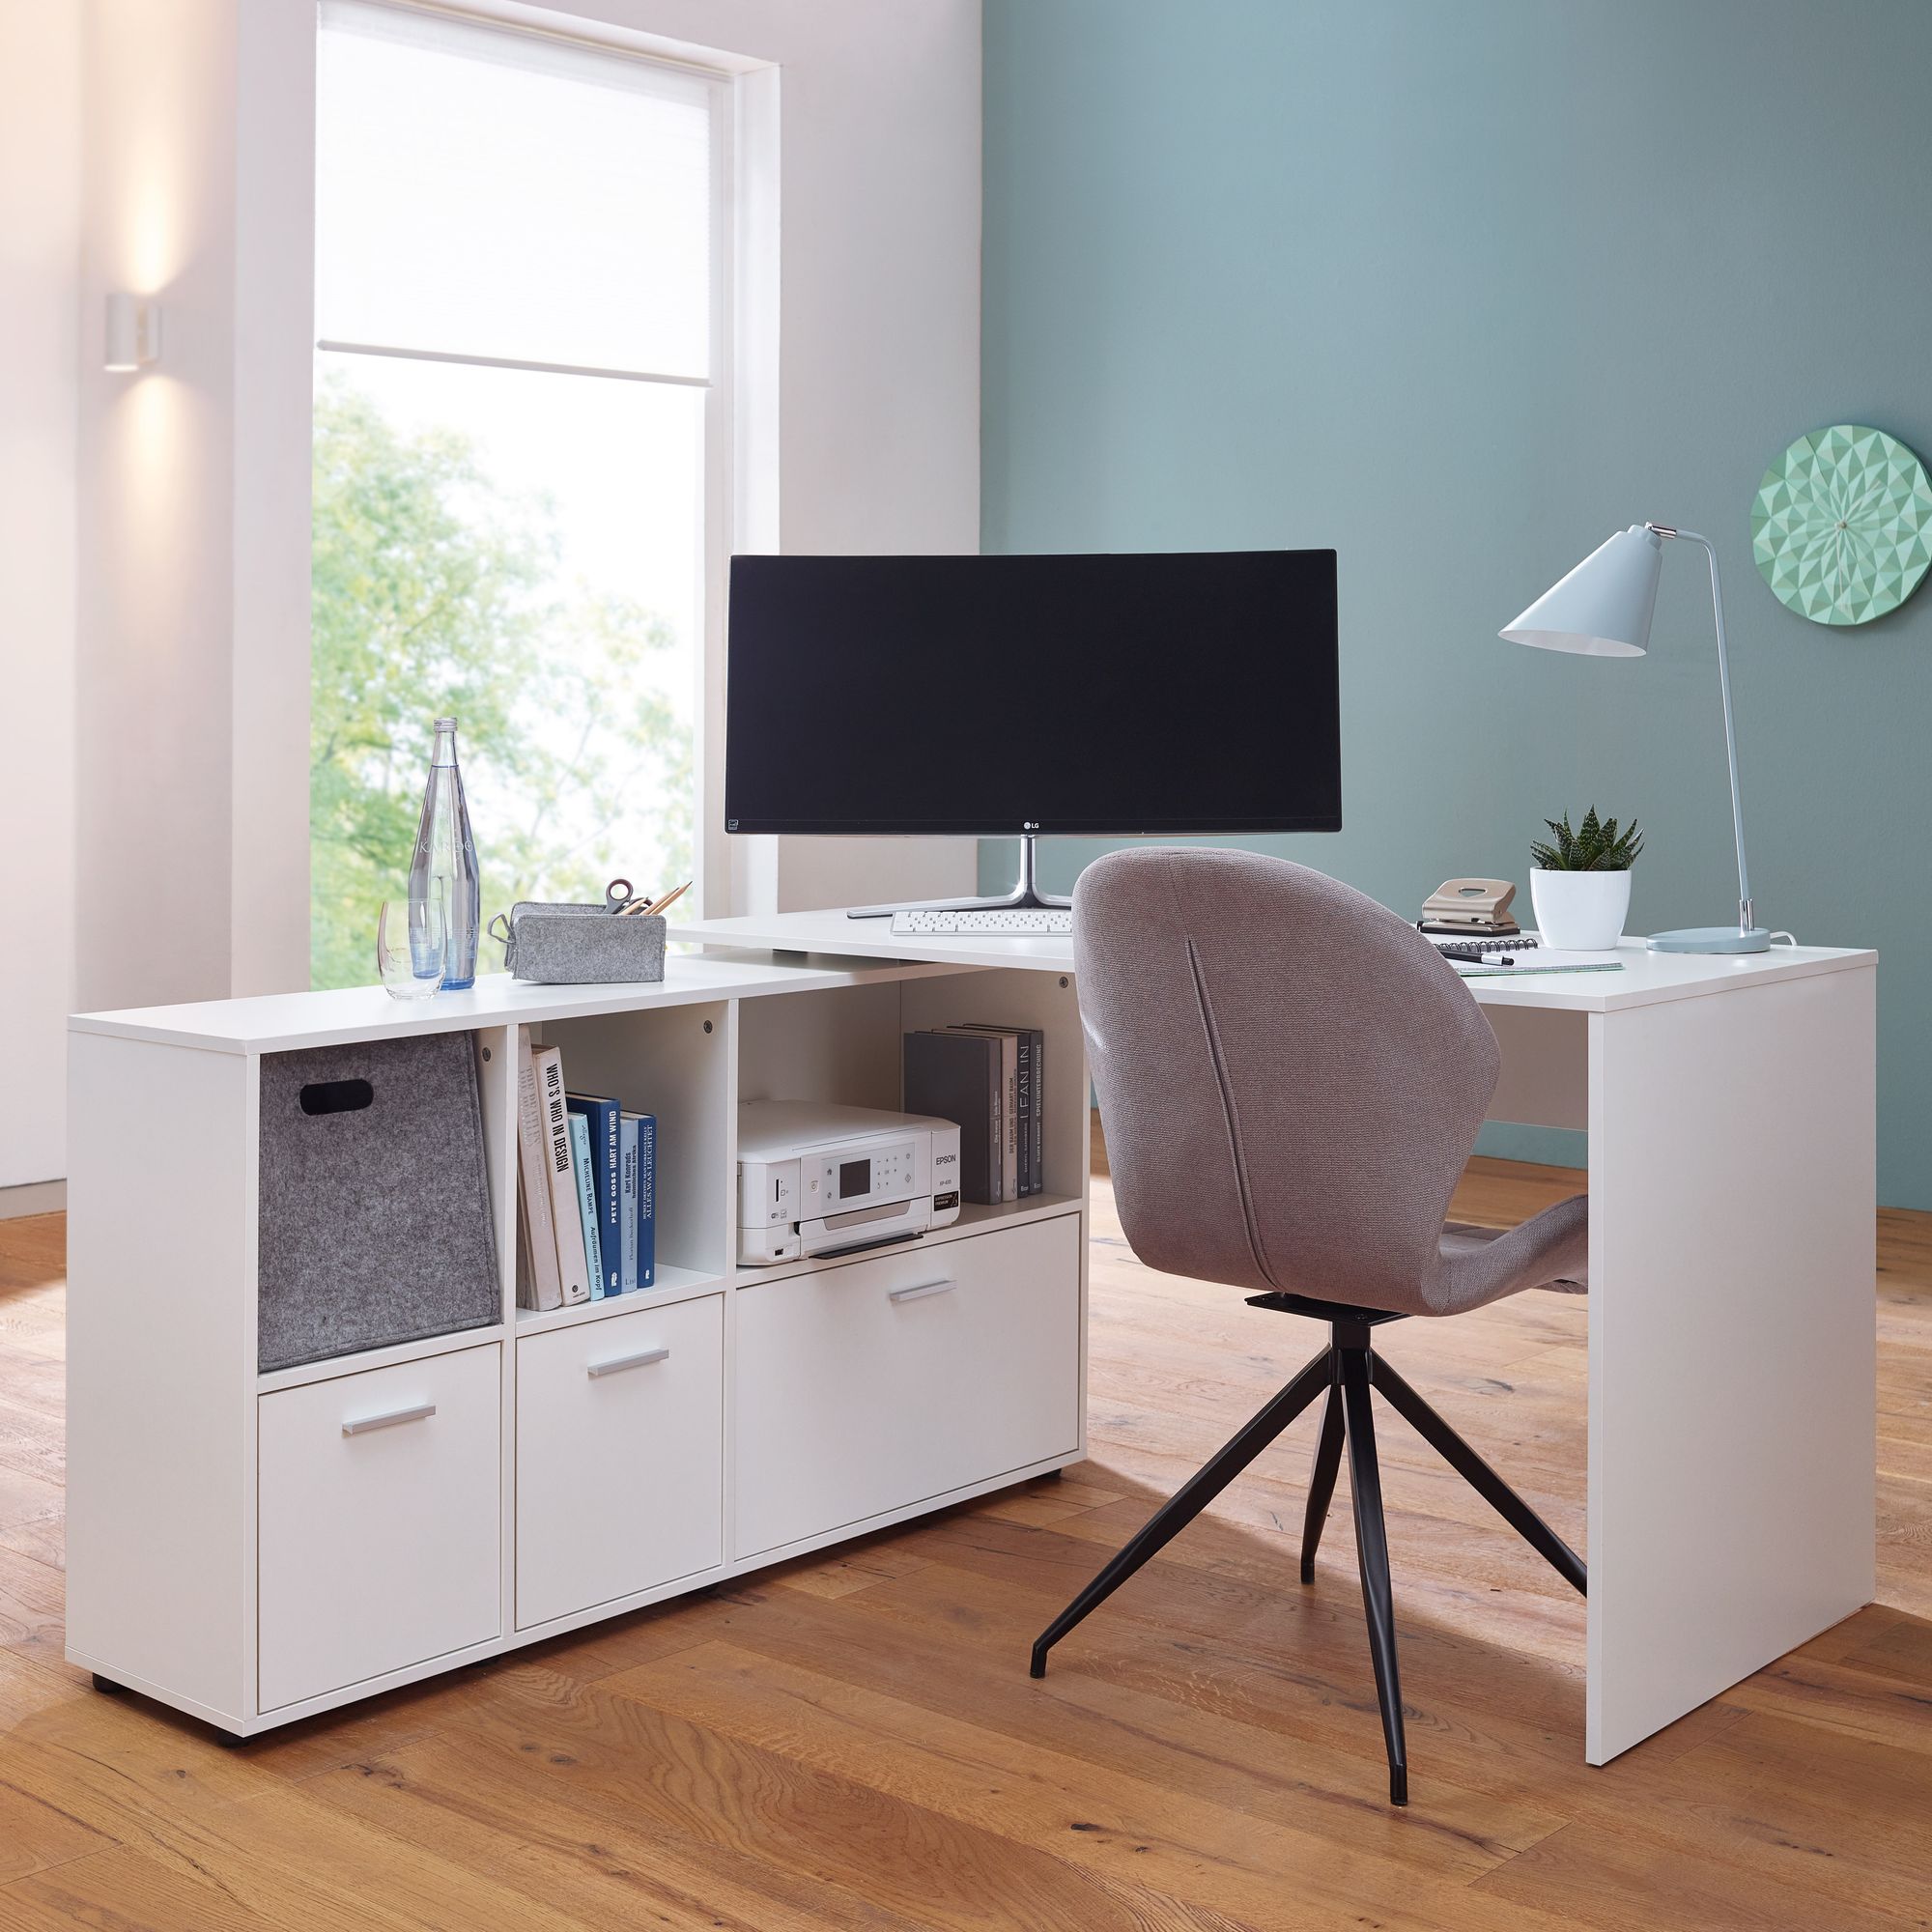 mit | Büro Modern Winkelschreibtisch Weiß Office Schreibtisch FineBuy cm 136 Schreibtischkombination | Tisch Sideboard Home